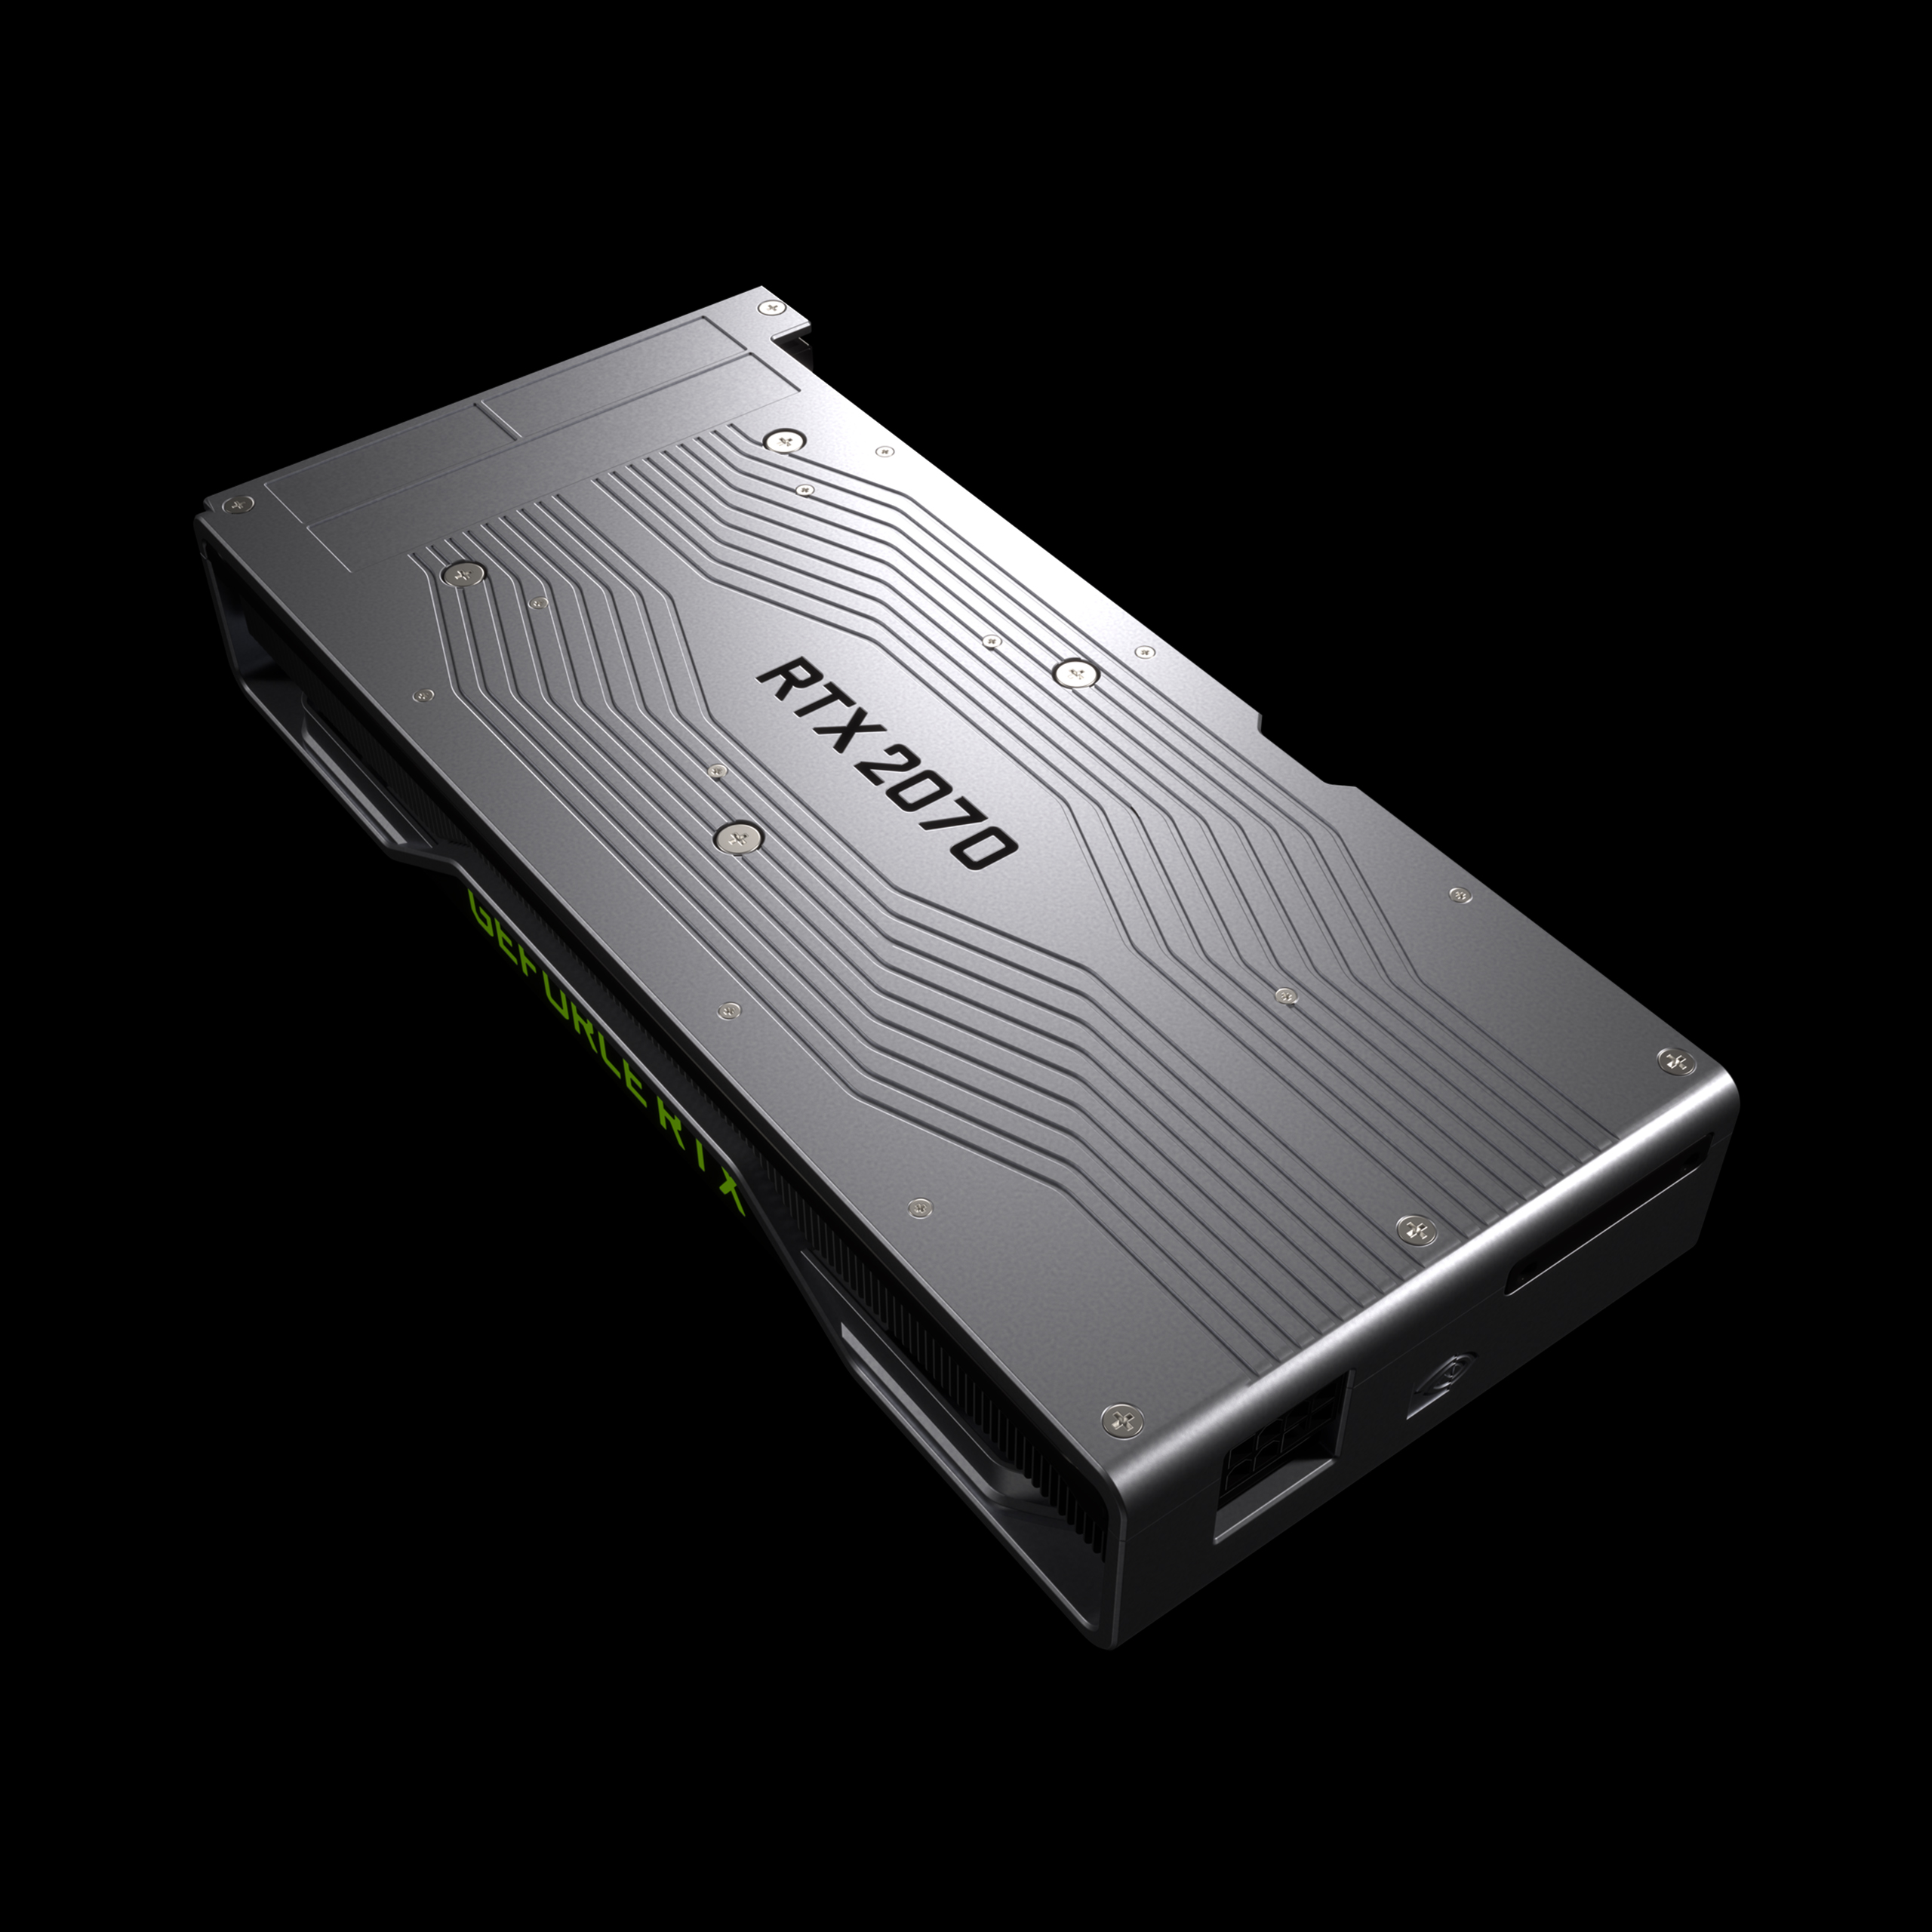 Immagine pubblicata in relazione al seguente contenuto: NVIDIA annuncia la data di lancio della video card GeForce RTX 2070 8GB DDR6 | Nome immagine: news28758_GeForce-RTX-2070_2.jpg